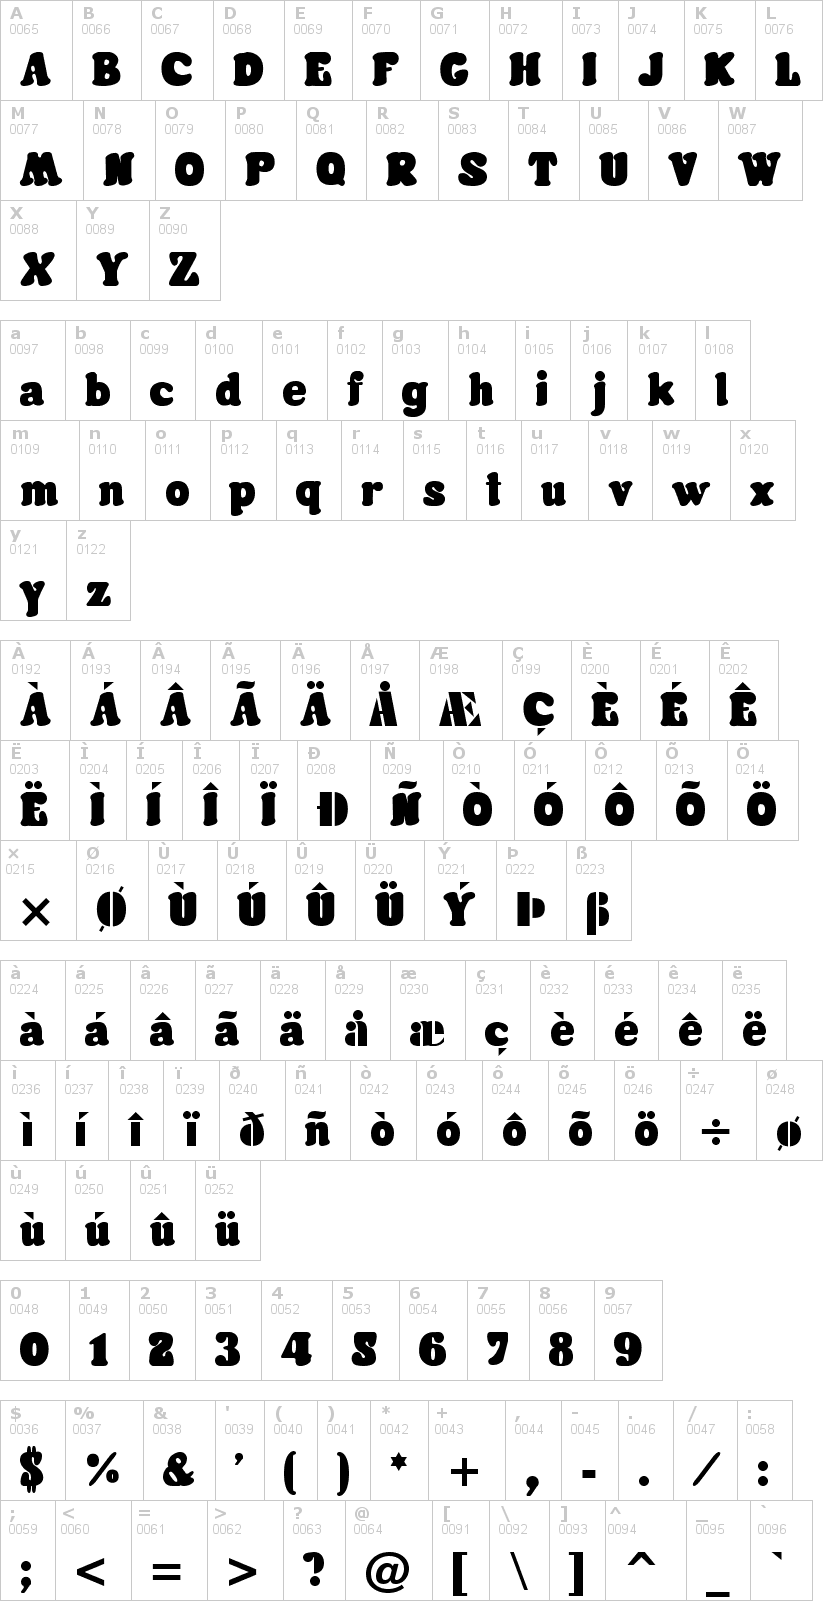 Lettere dell'alfabeto del font futura-rounded con le quali è possibile realizzare adesivi prespaziati